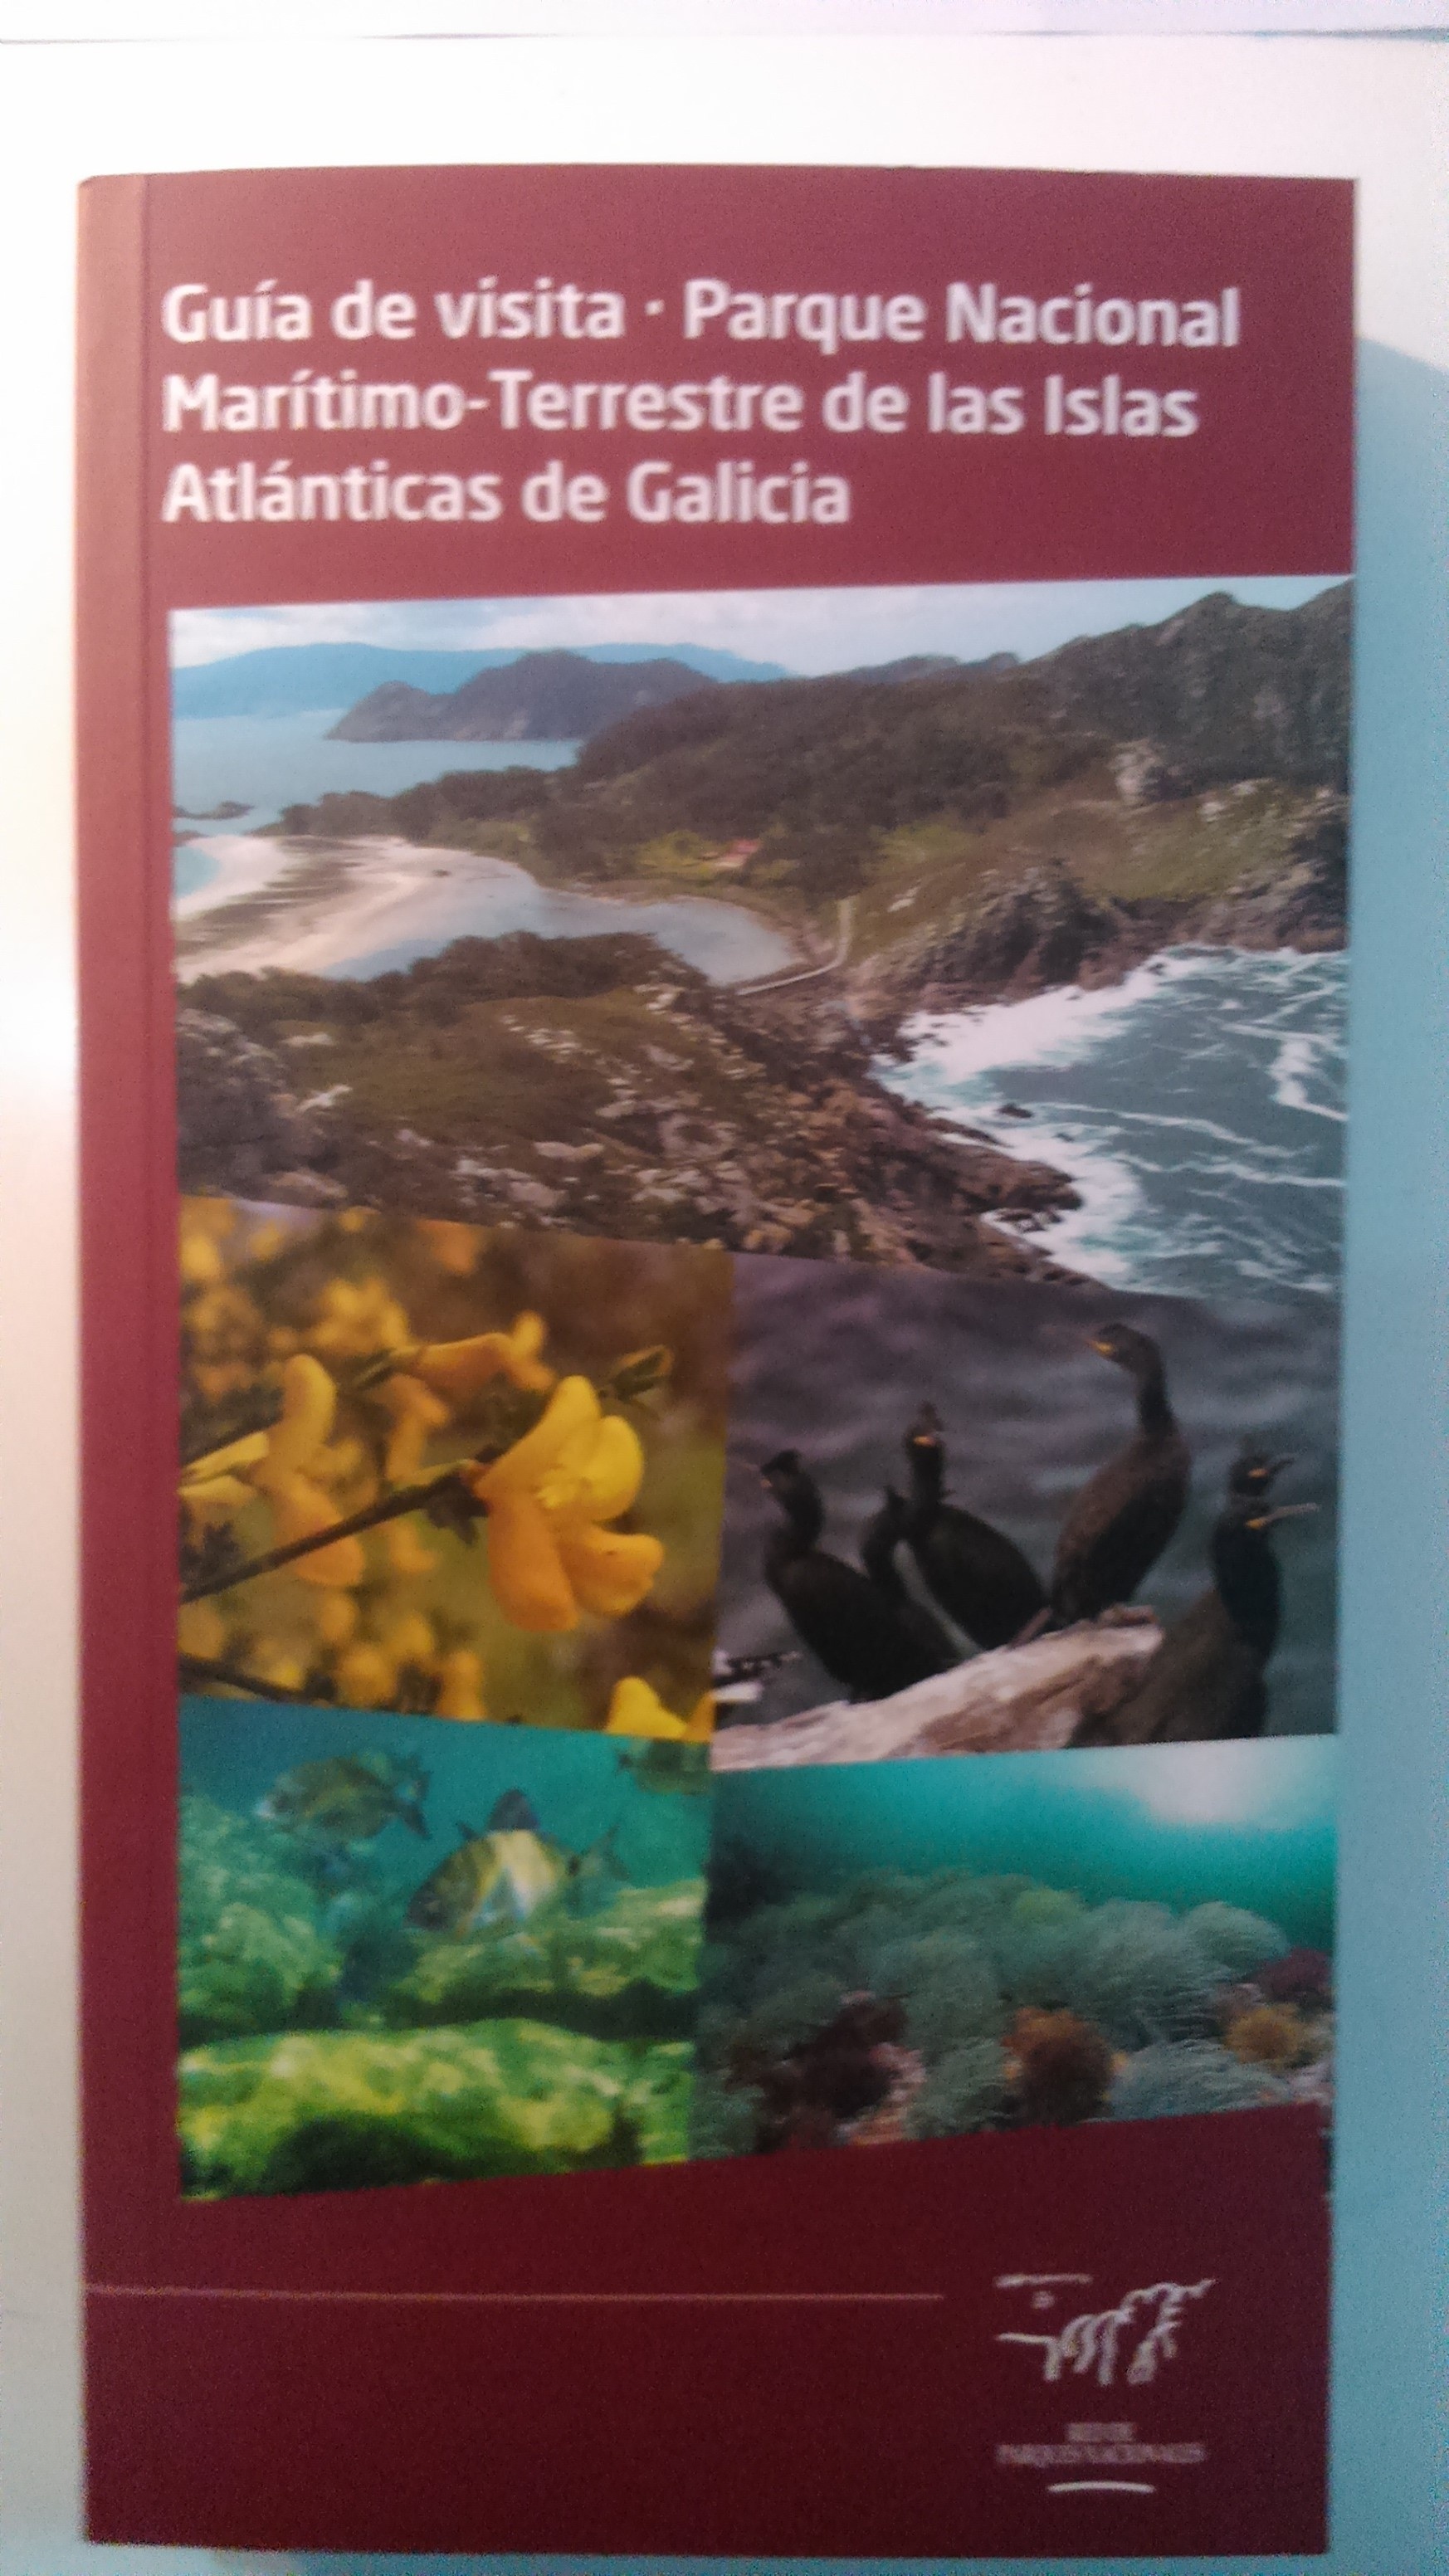 Guía de visita. Parque Marítimo-Terrestre de las Islas Atlánticas de Galicia